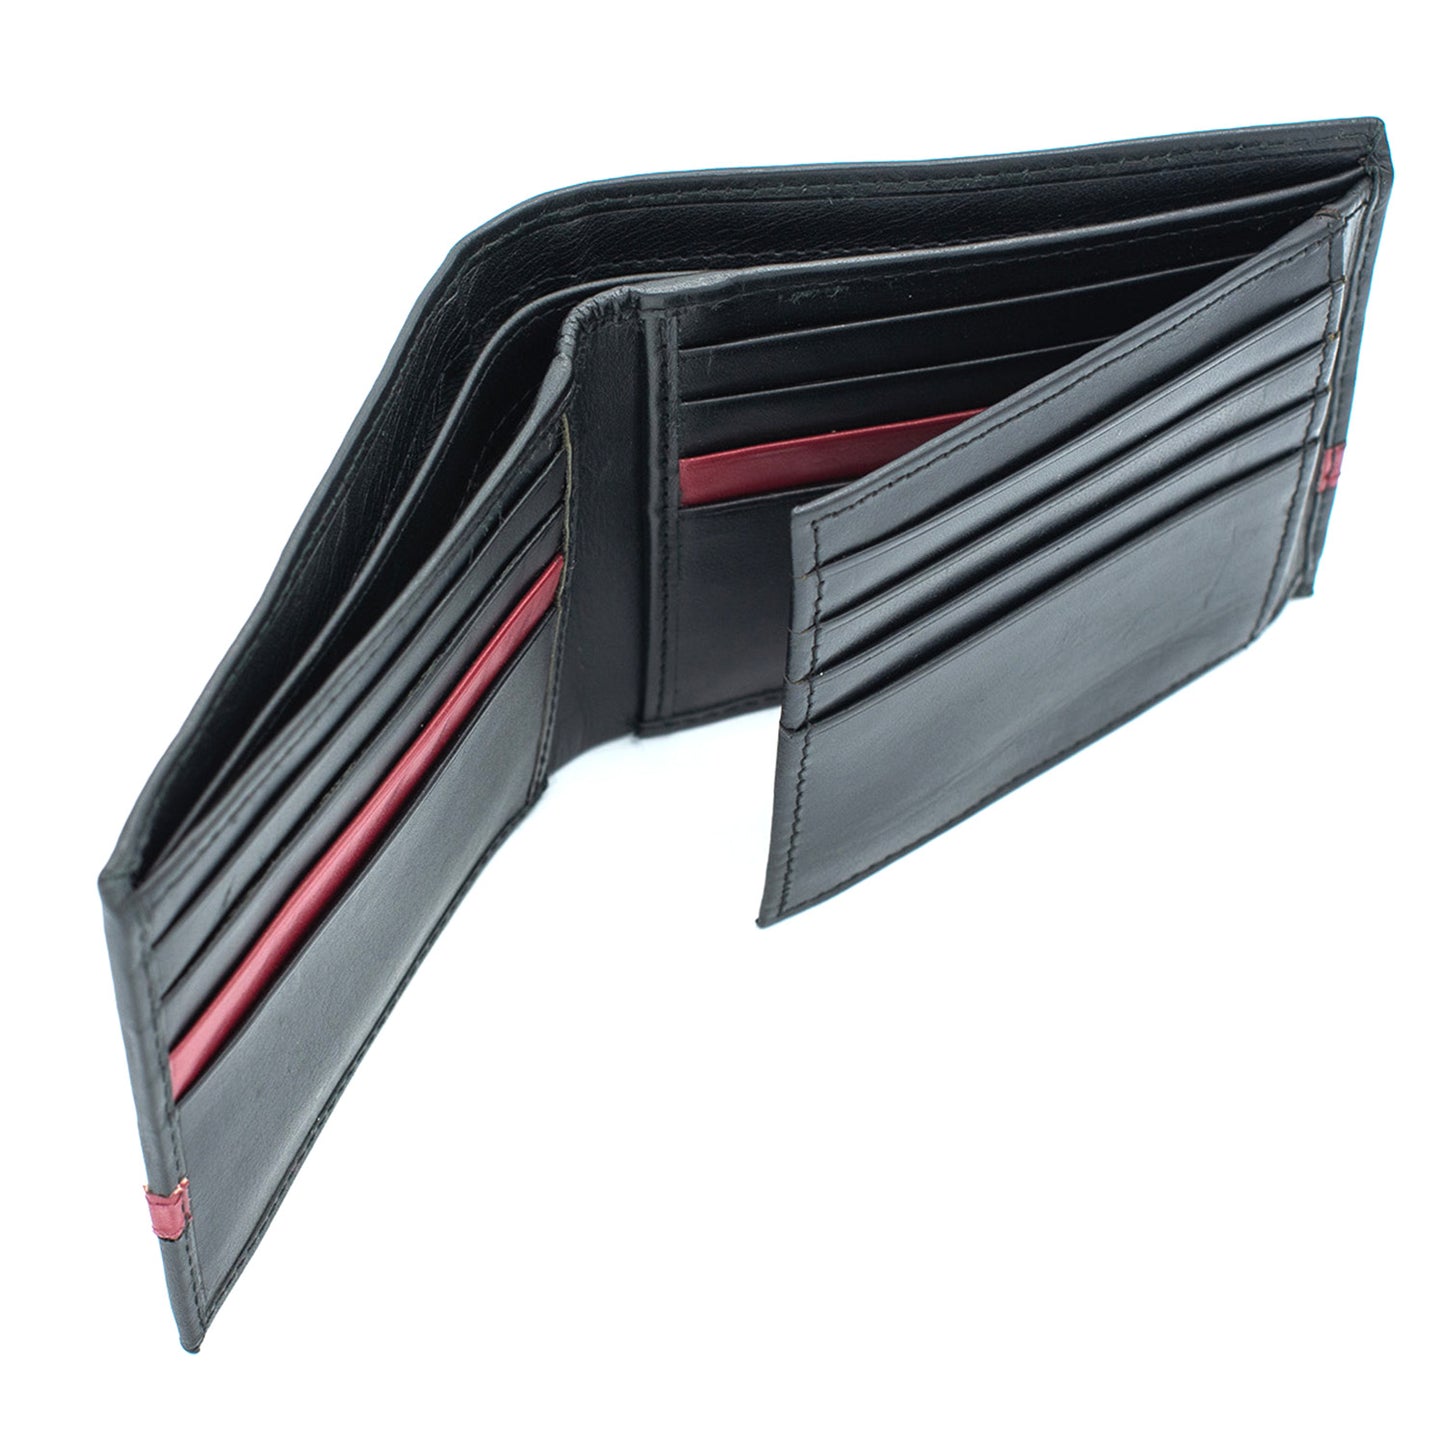 Men's Leather Wallet Bifold | RFID-Safe